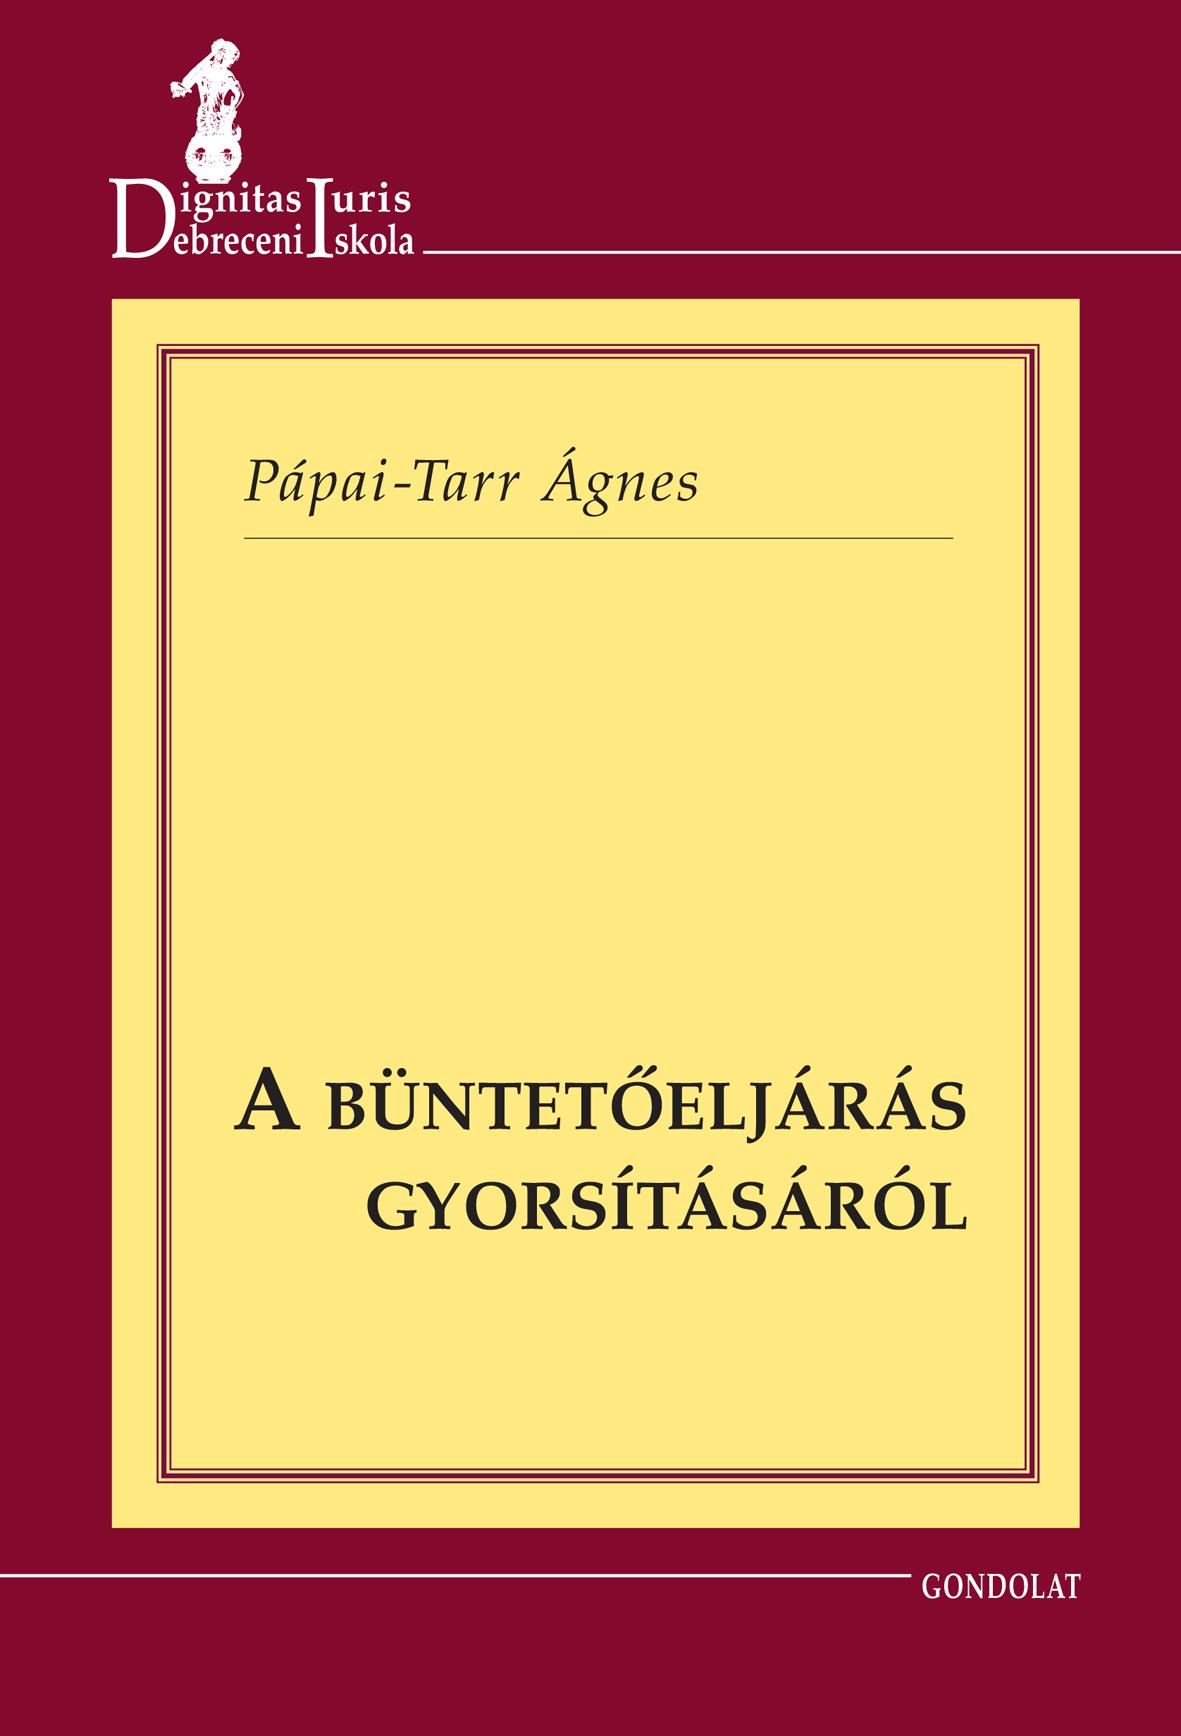 PPAI-TARR GNES - A BNTETELJRS GYORSTSRL